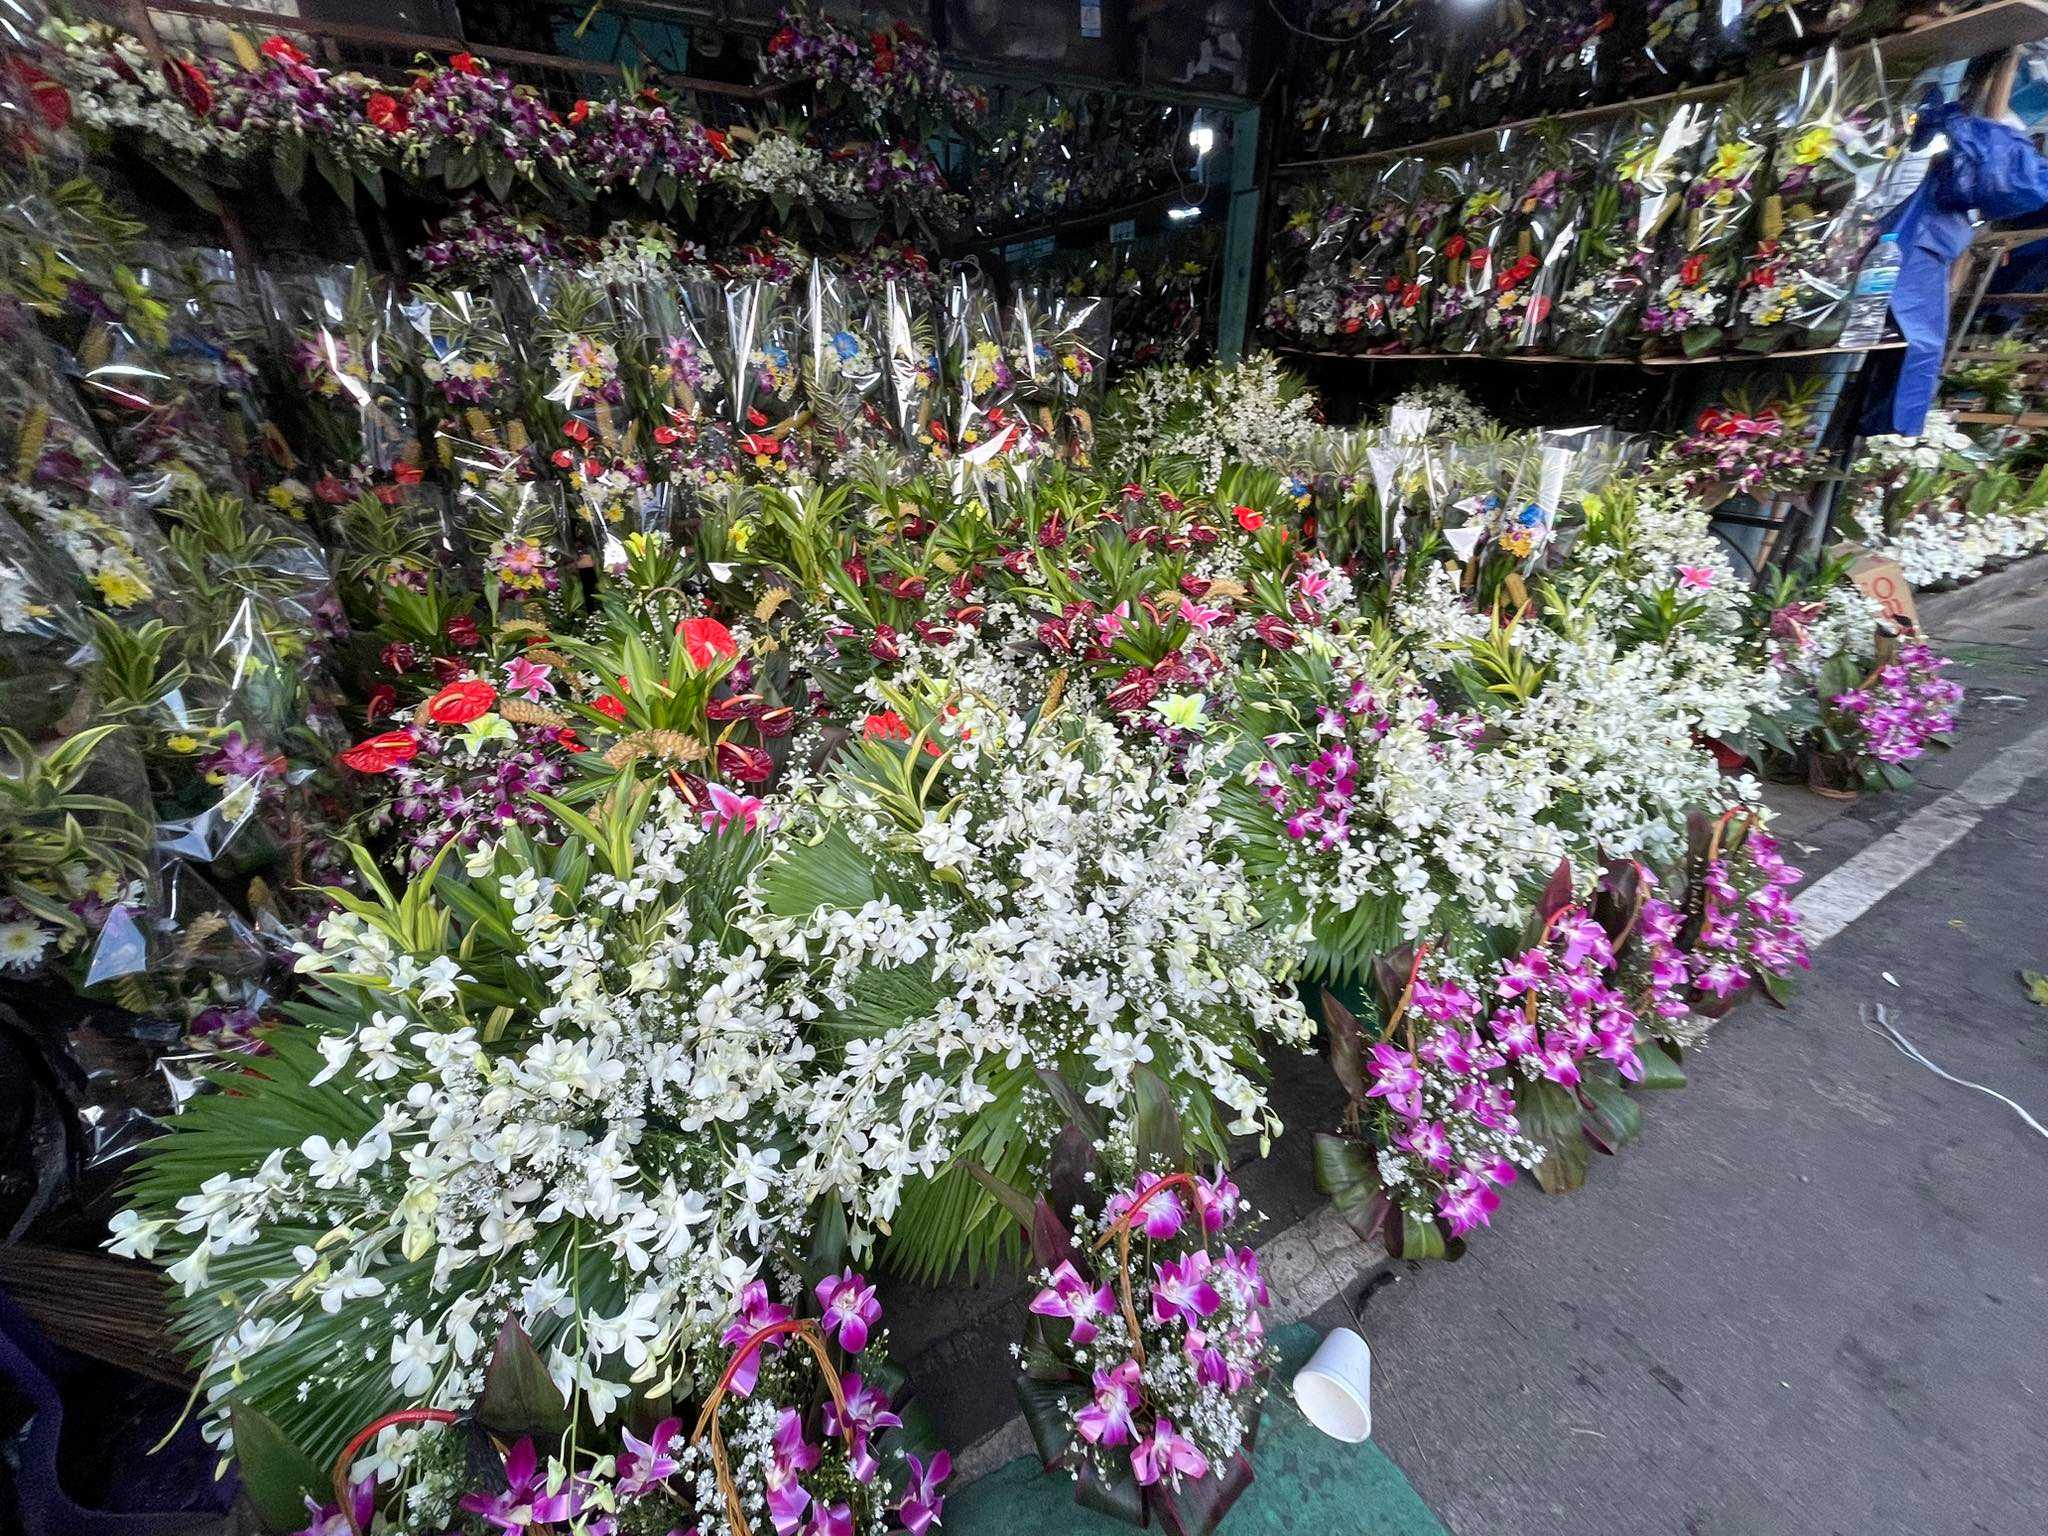 Prices of flowers in Dangwa Market increase ahead Undas